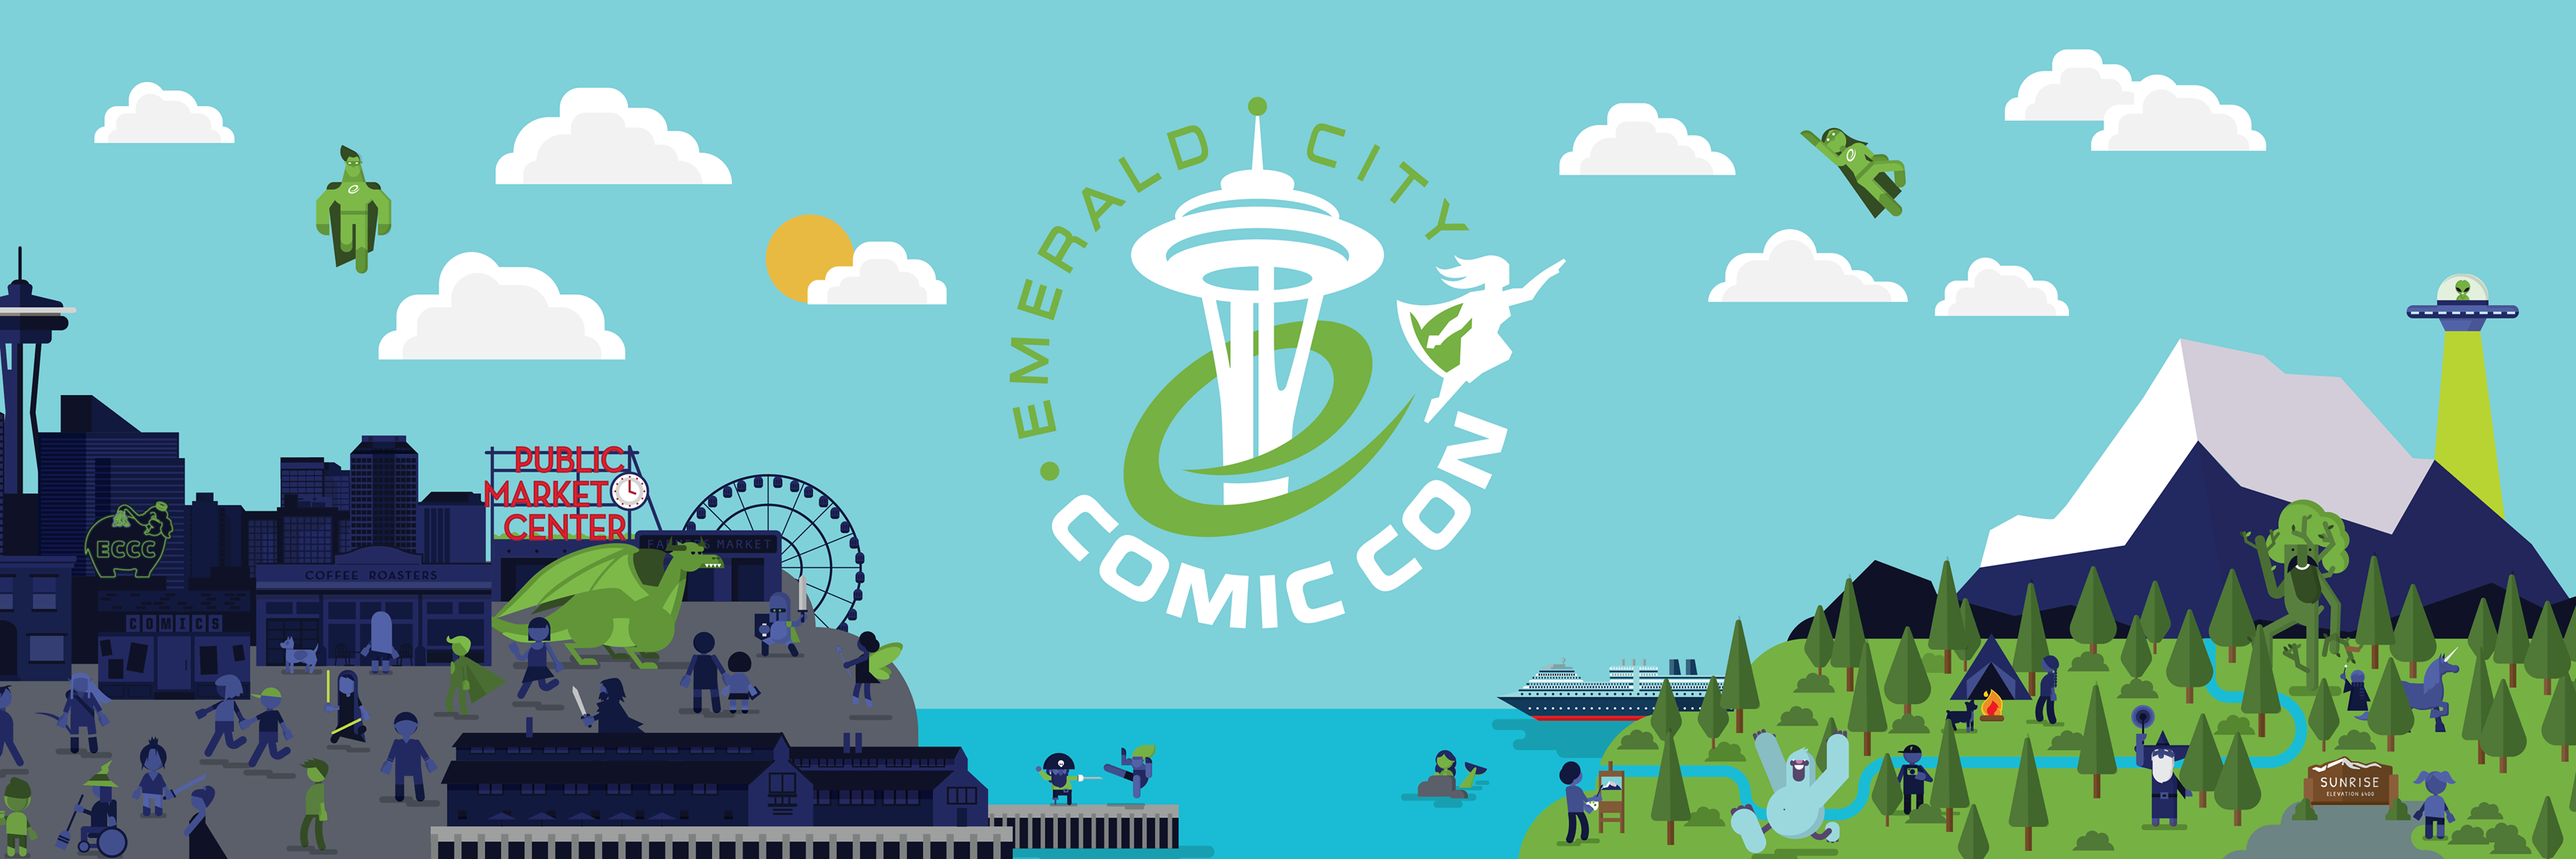 Emerald City Comic Con Comic Book Fiend Club